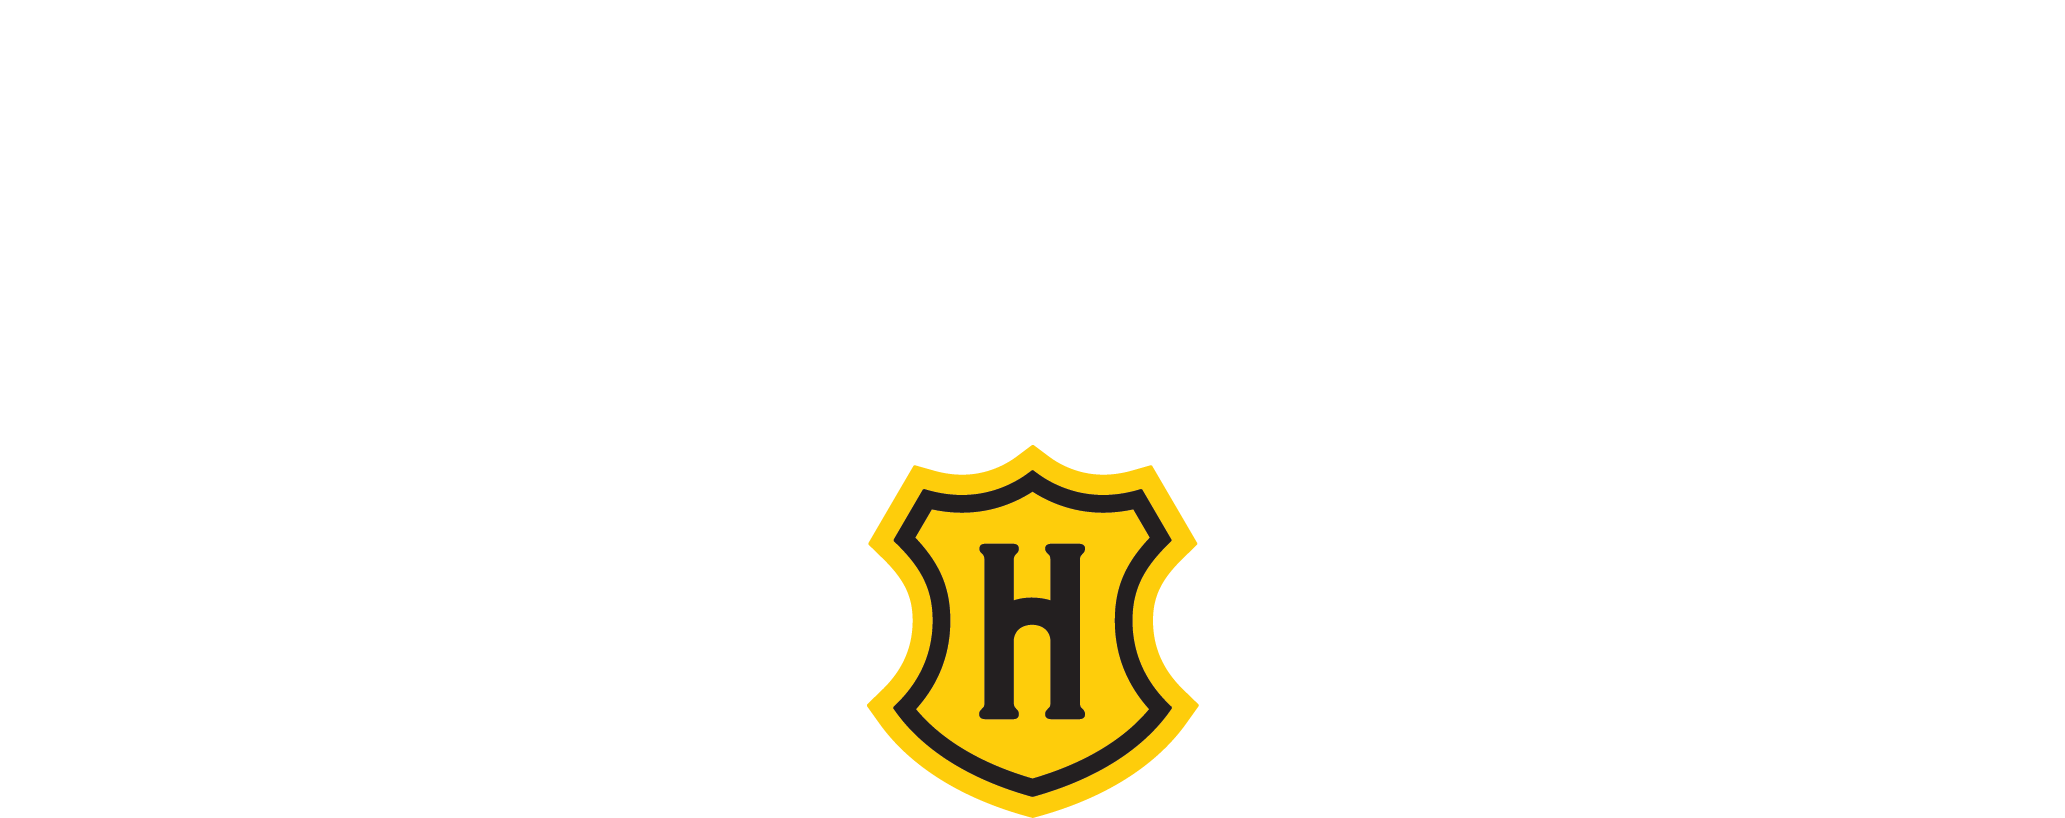 J.W. Hulme white logo